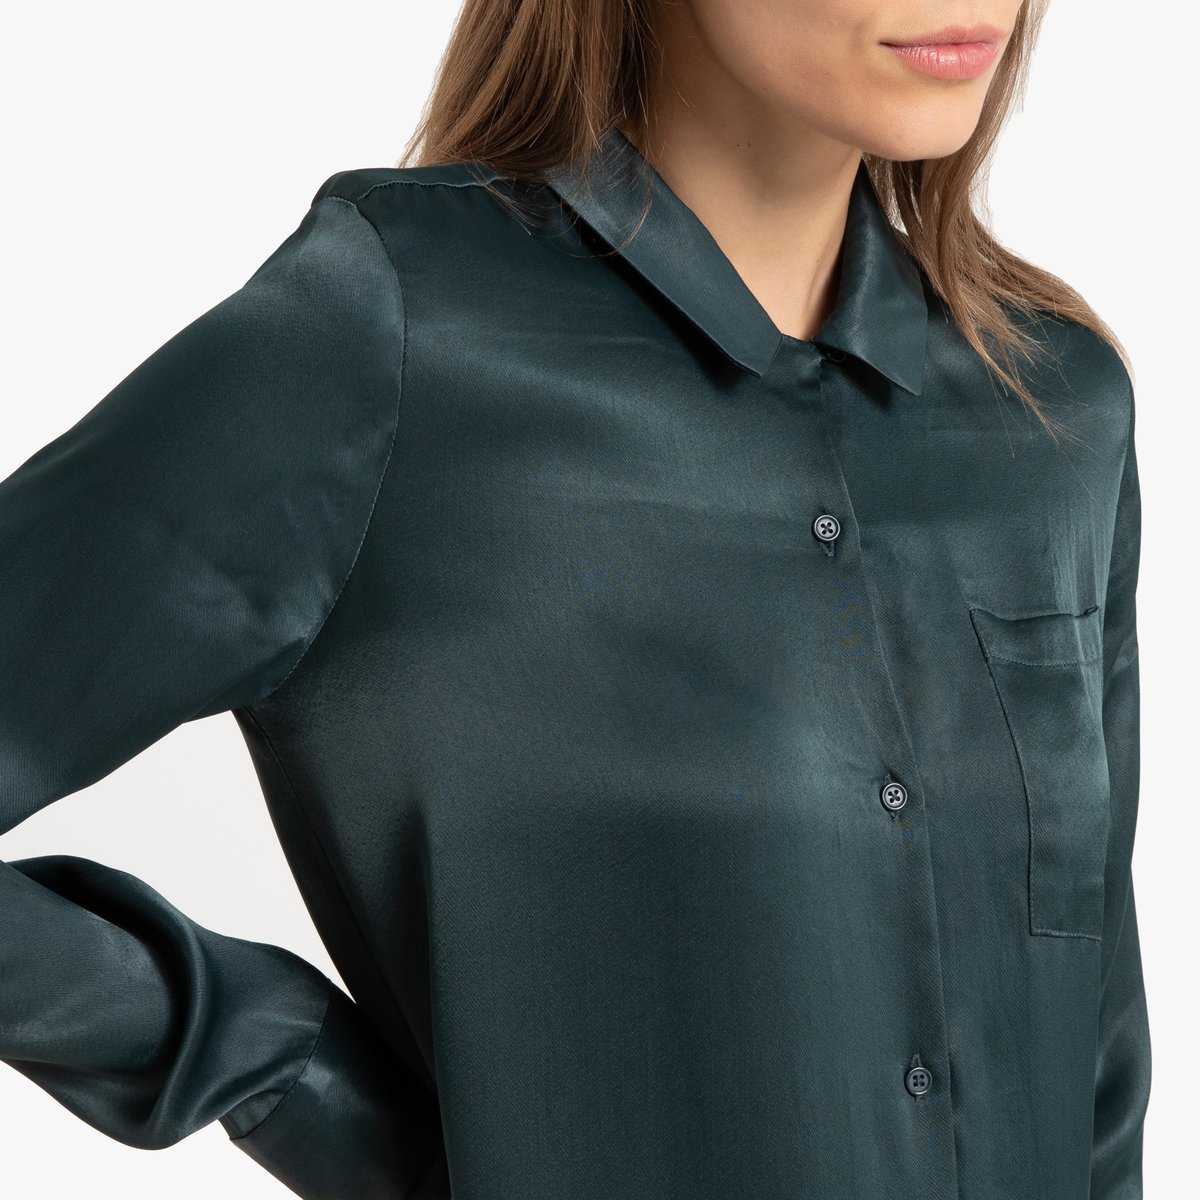 Платье-рубашка La Redoute Миди с длинными рукавами 40 (FR) - 46 (RUS) зеленый, размер 40 (FR) - 46 (RUS) Миди с длинными рукавами 40 (FR) - 46 (RUS) зеленый - фото 4